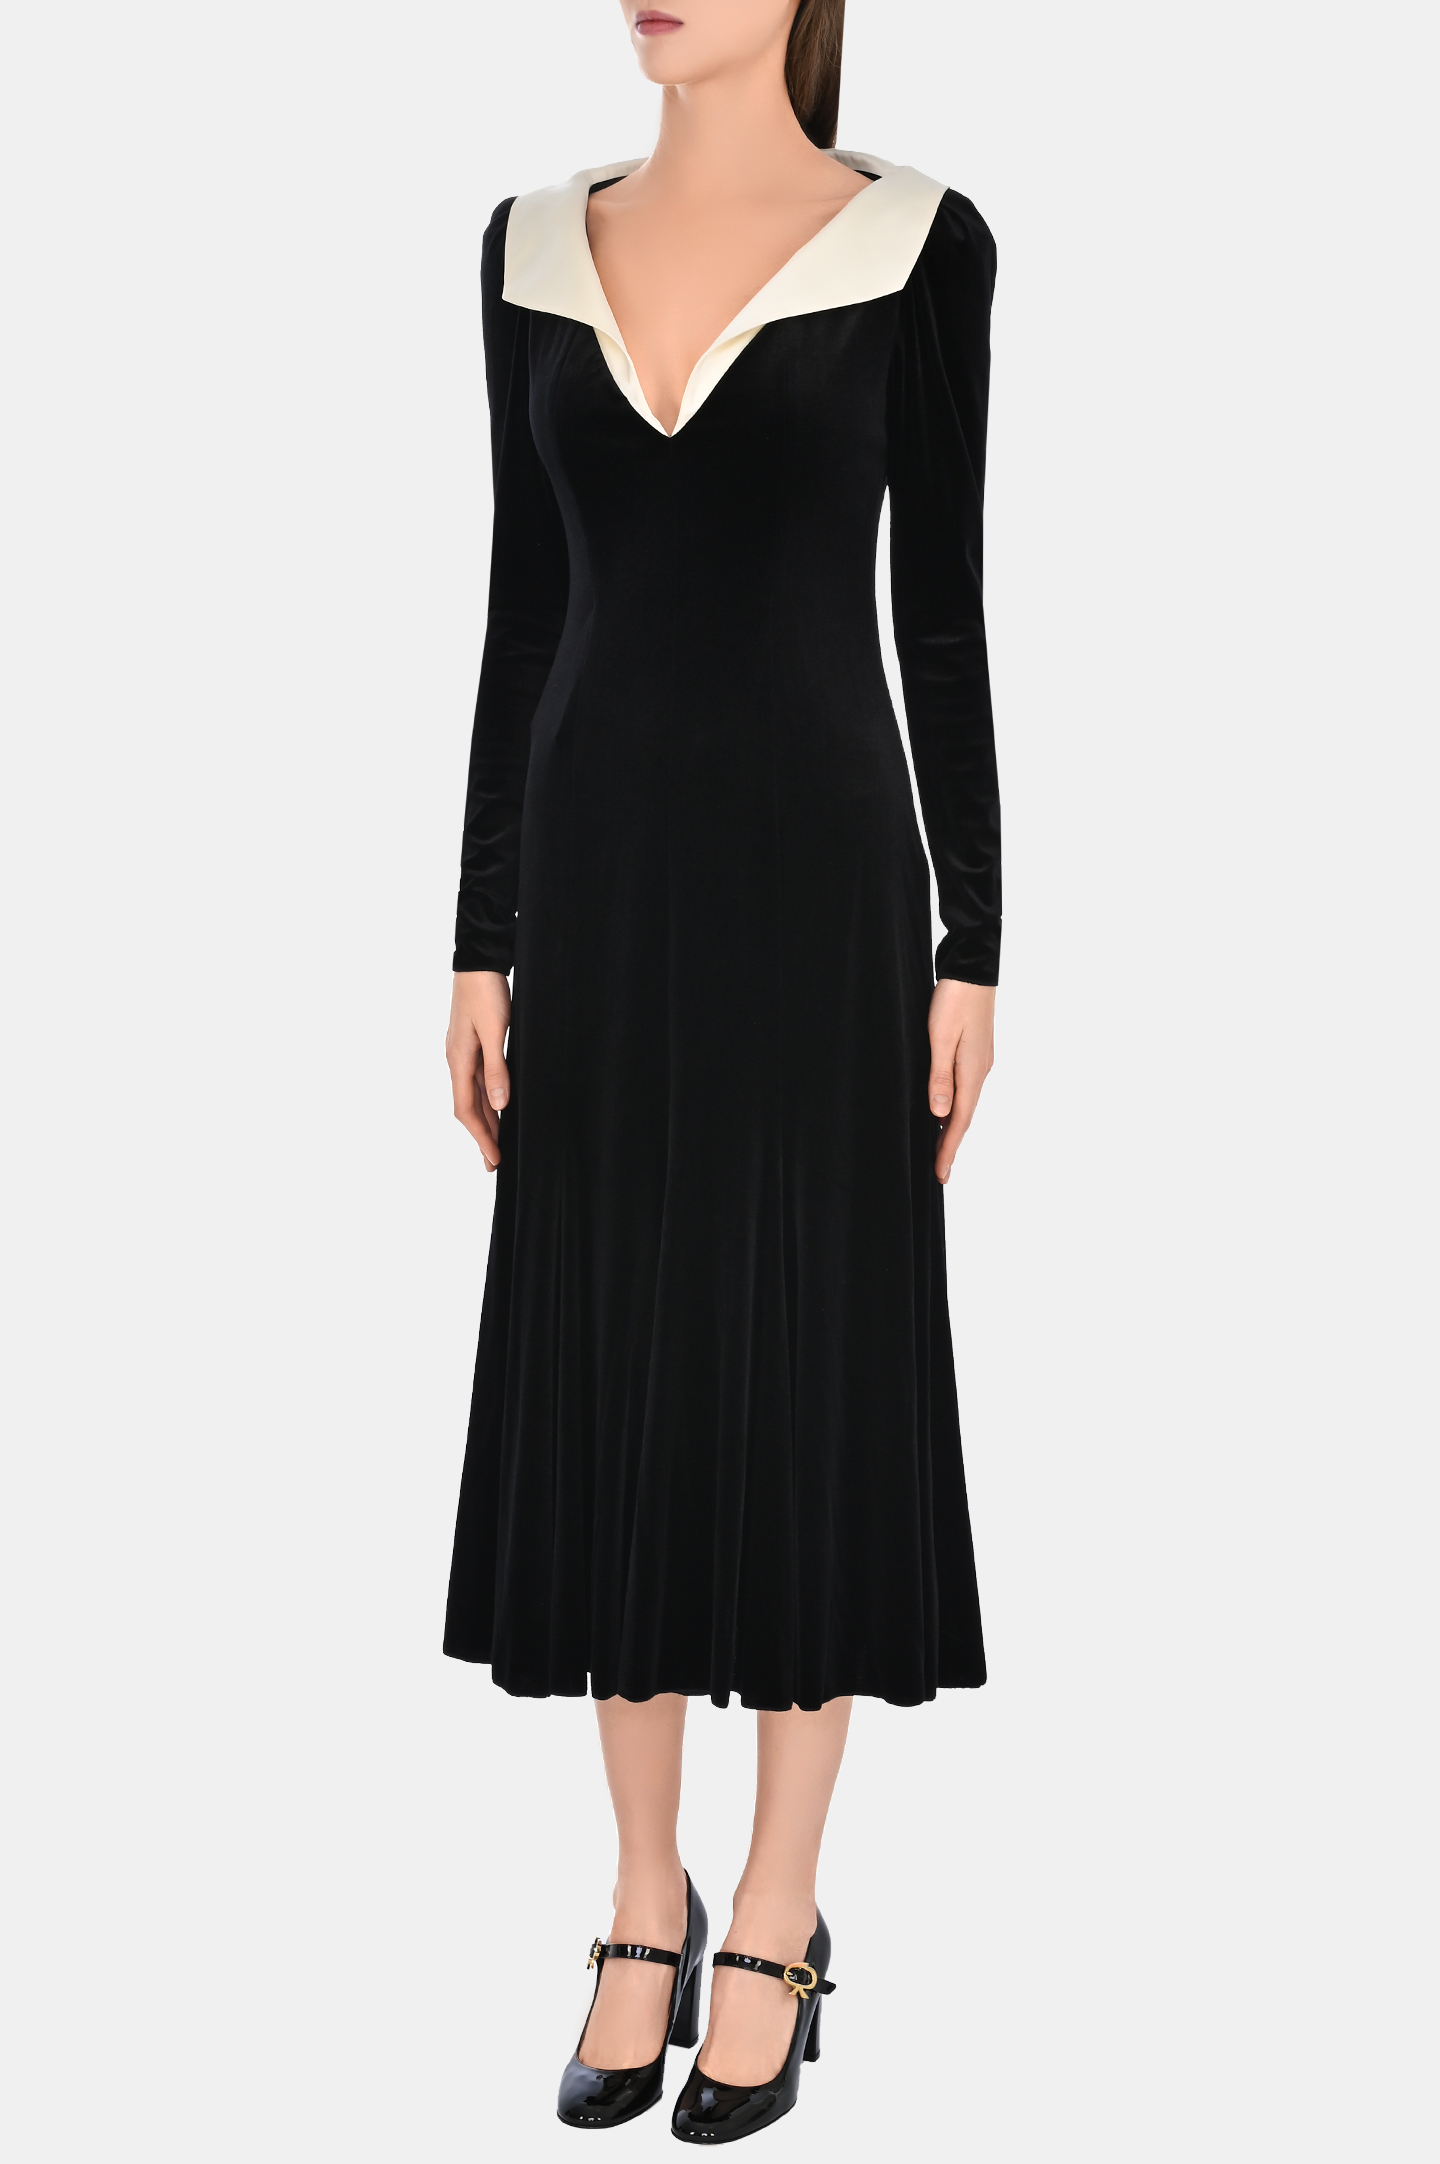 Платье PHILOSOPHY DI LORENZO SERAFINI A0455 5728, цвет: Черный, Женский